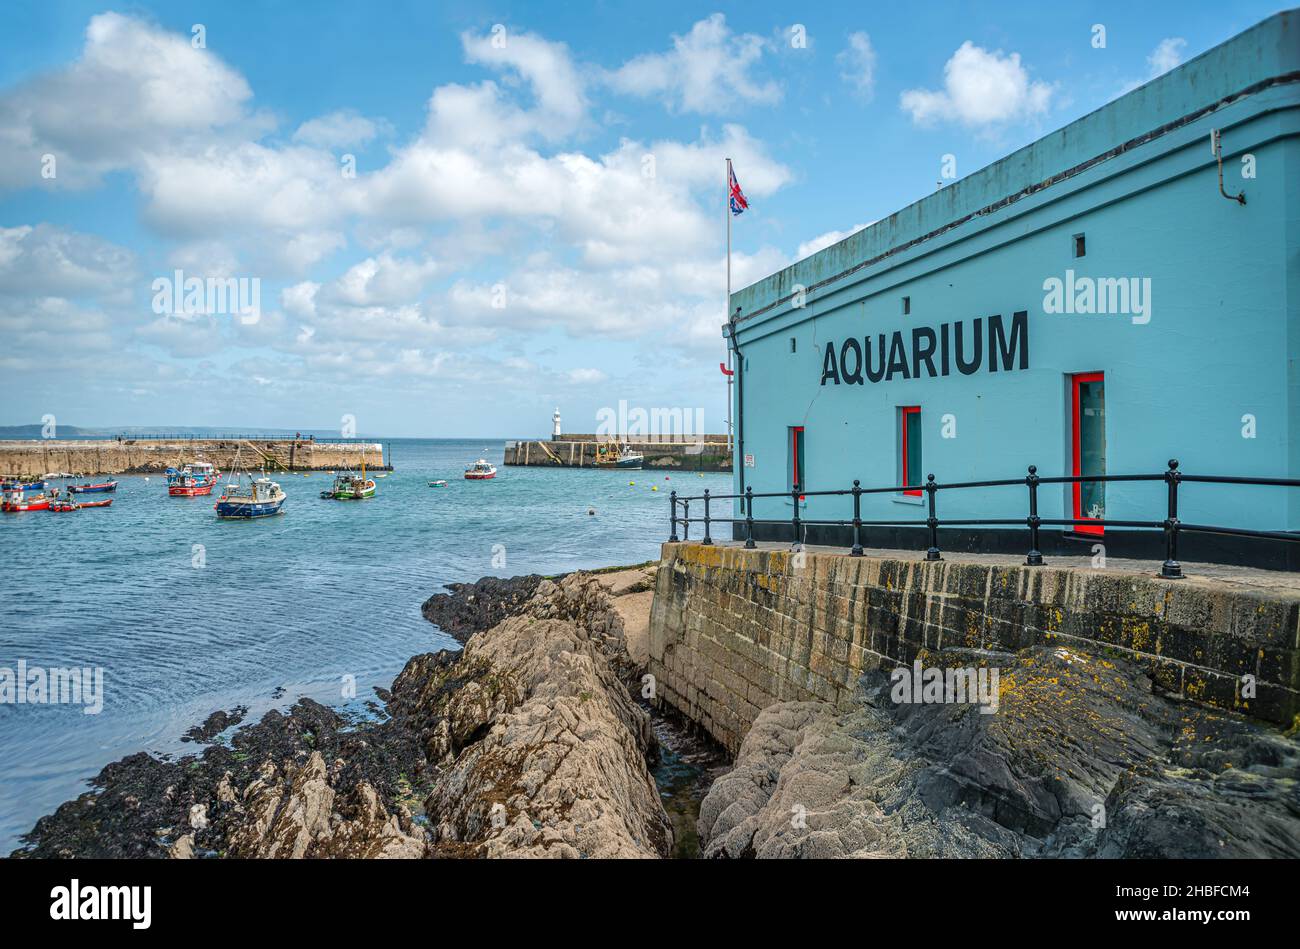 Bâtiment de l'aquarium au port de Mevagissey à Cornwall, Angleterre, Royaume-Uni Banque D'Images